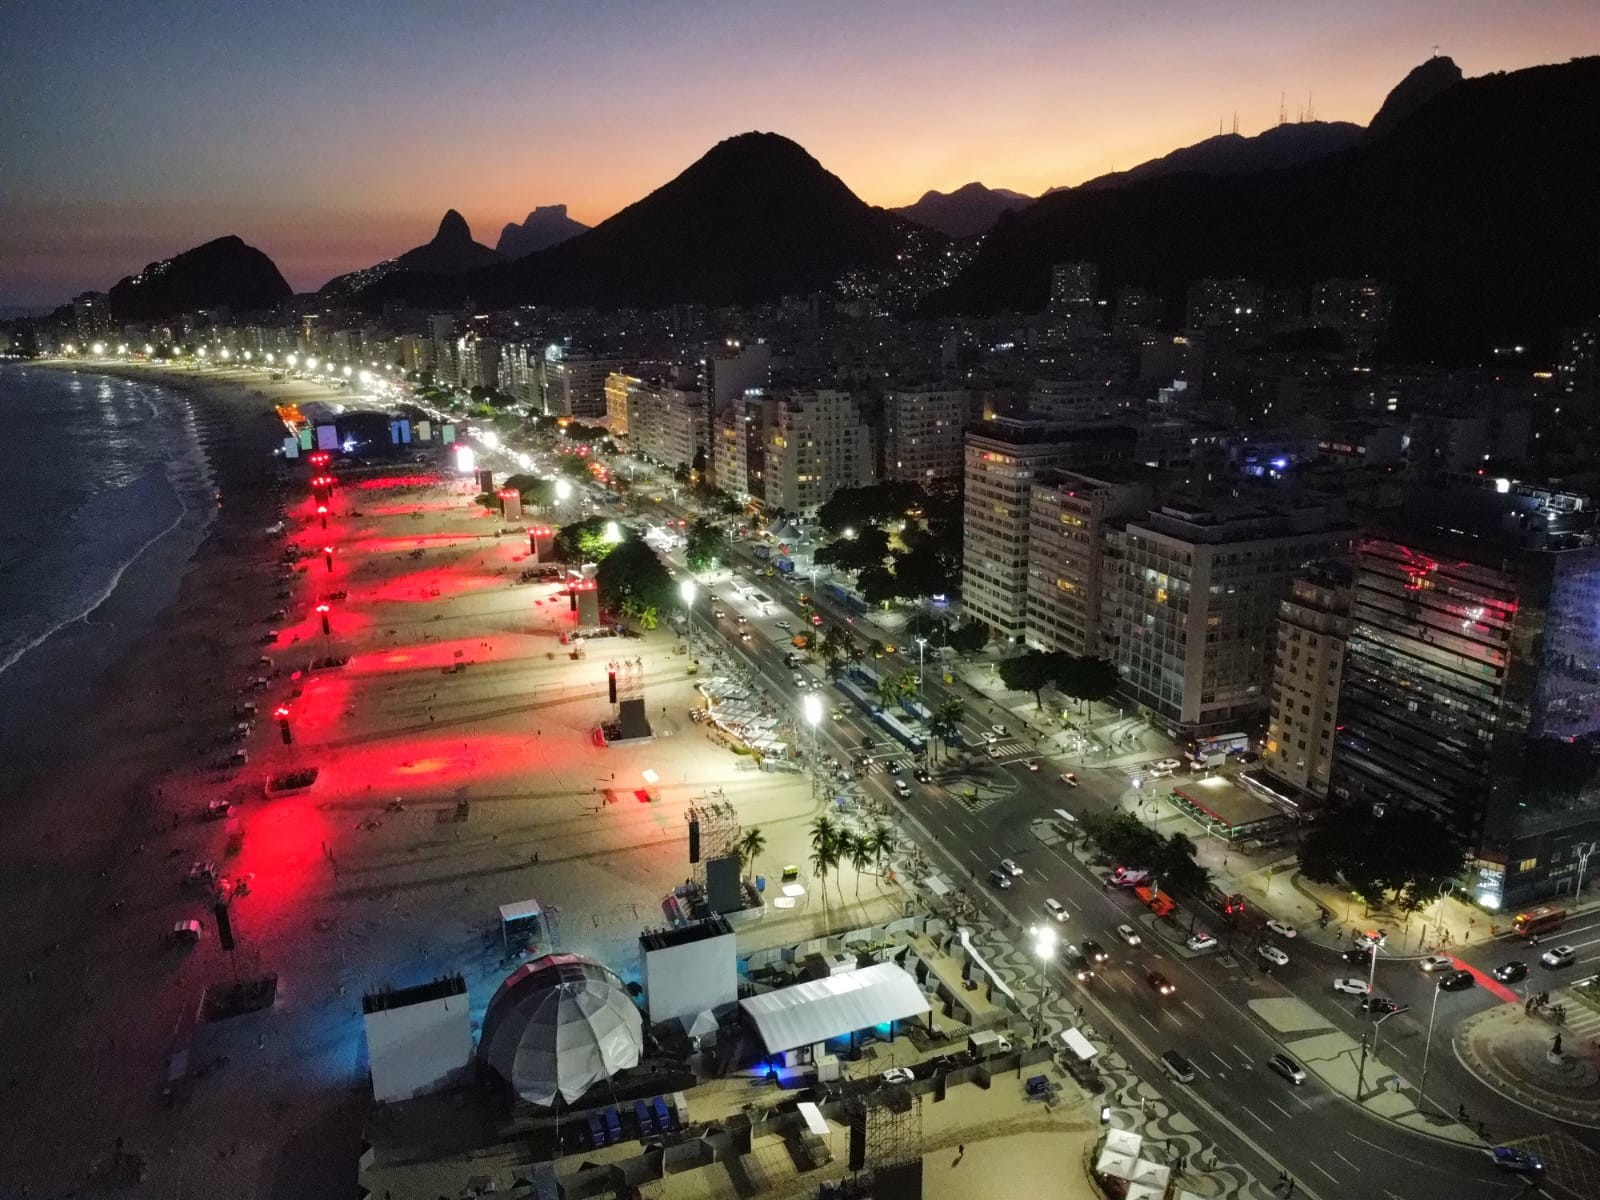 Palco do show da cantora Madonna na praia de Copacabana — Foto: Custodio Coimbra